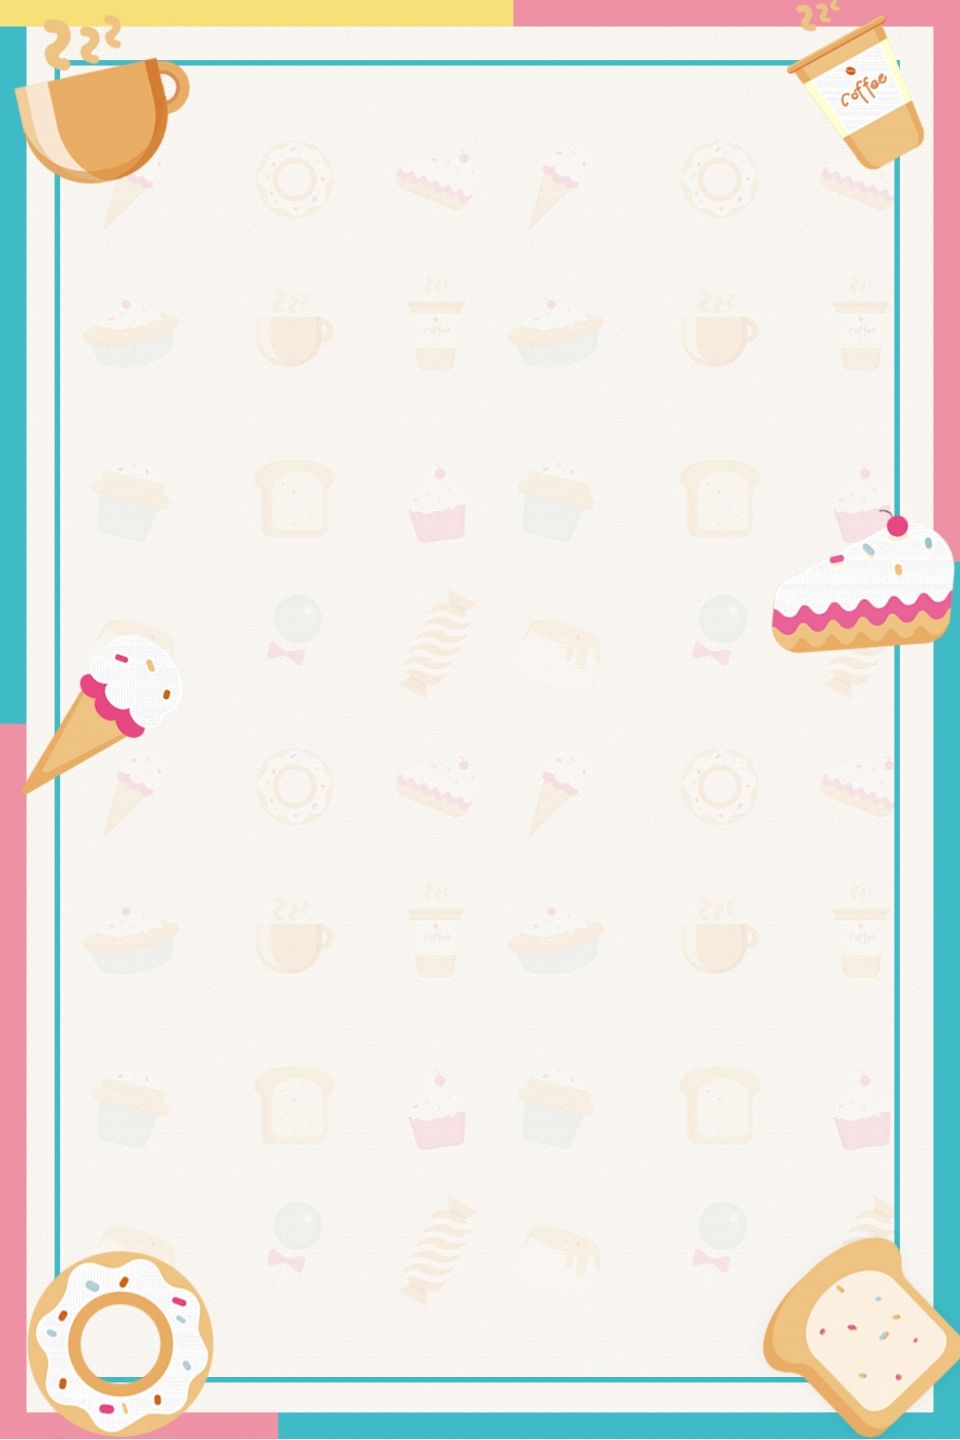 Enjoy Afternoon Tea Sweet Taste Poster Background Material | Cartaz doces,  Arte de doces, Cartões de visita para padaria - fundo para cardapio de bolos